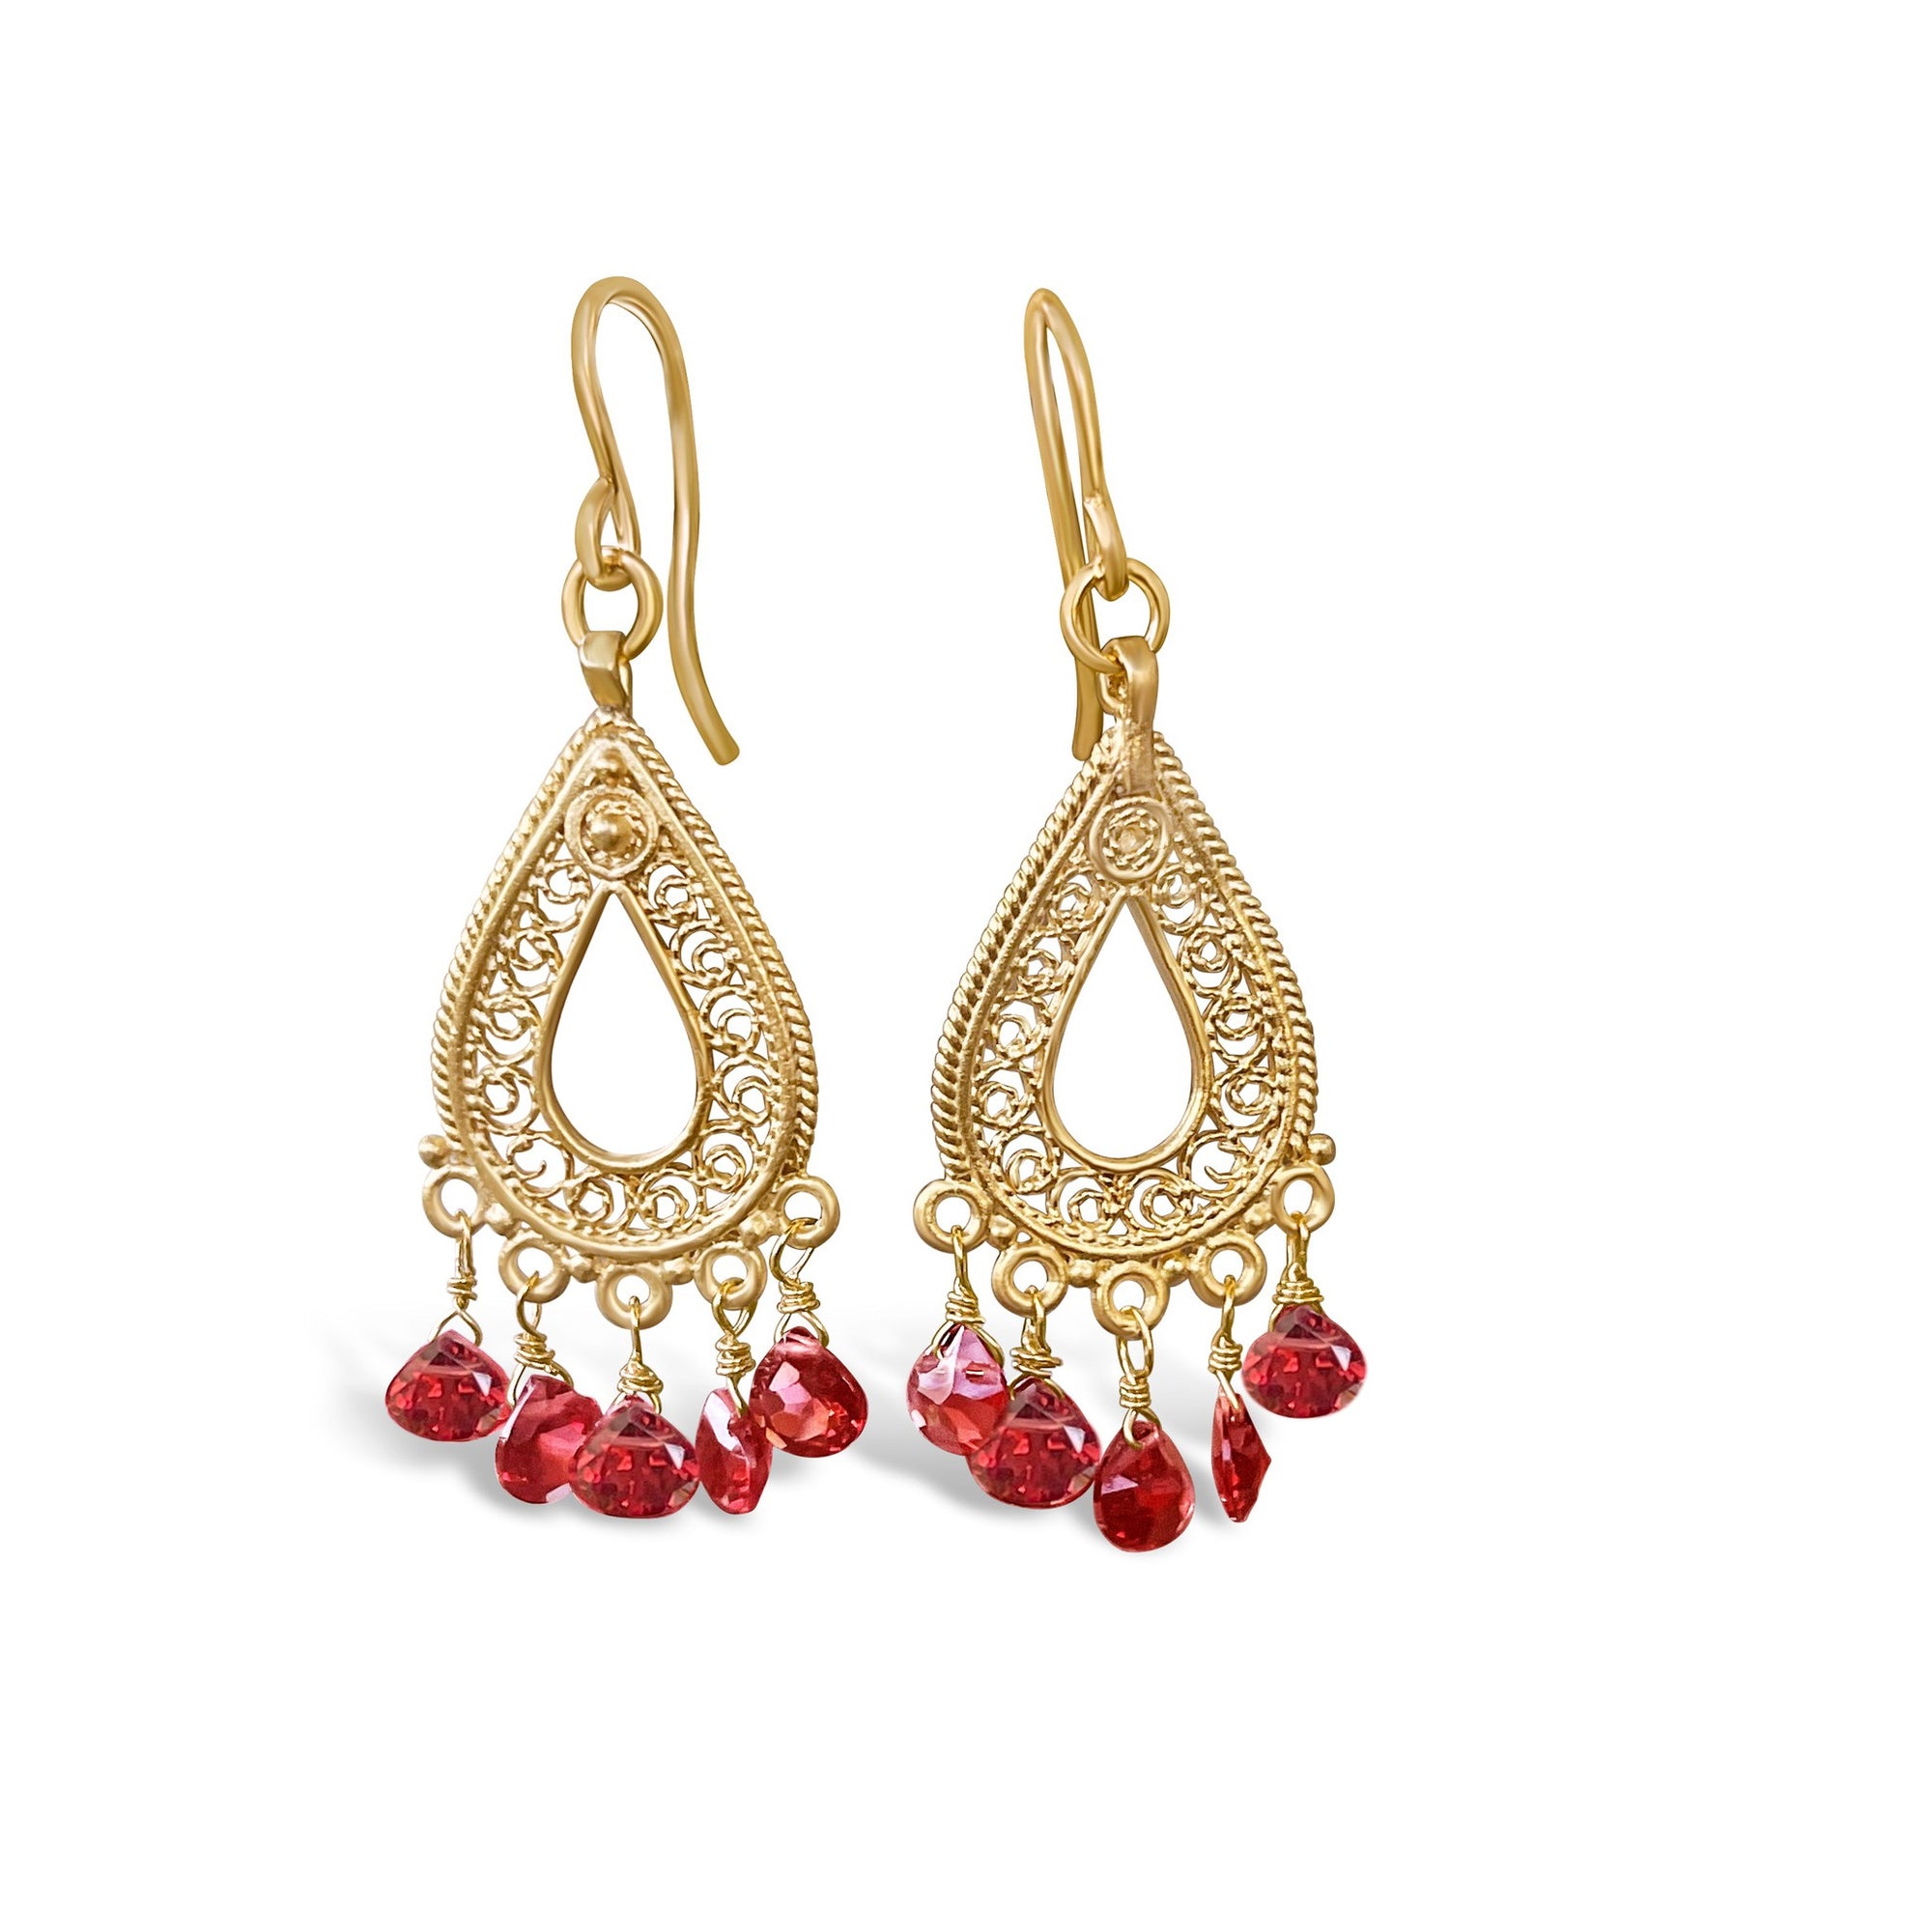 Garnet Tear Drop Chandelier Earrings | 22k Gold Plated Indian Jewelry